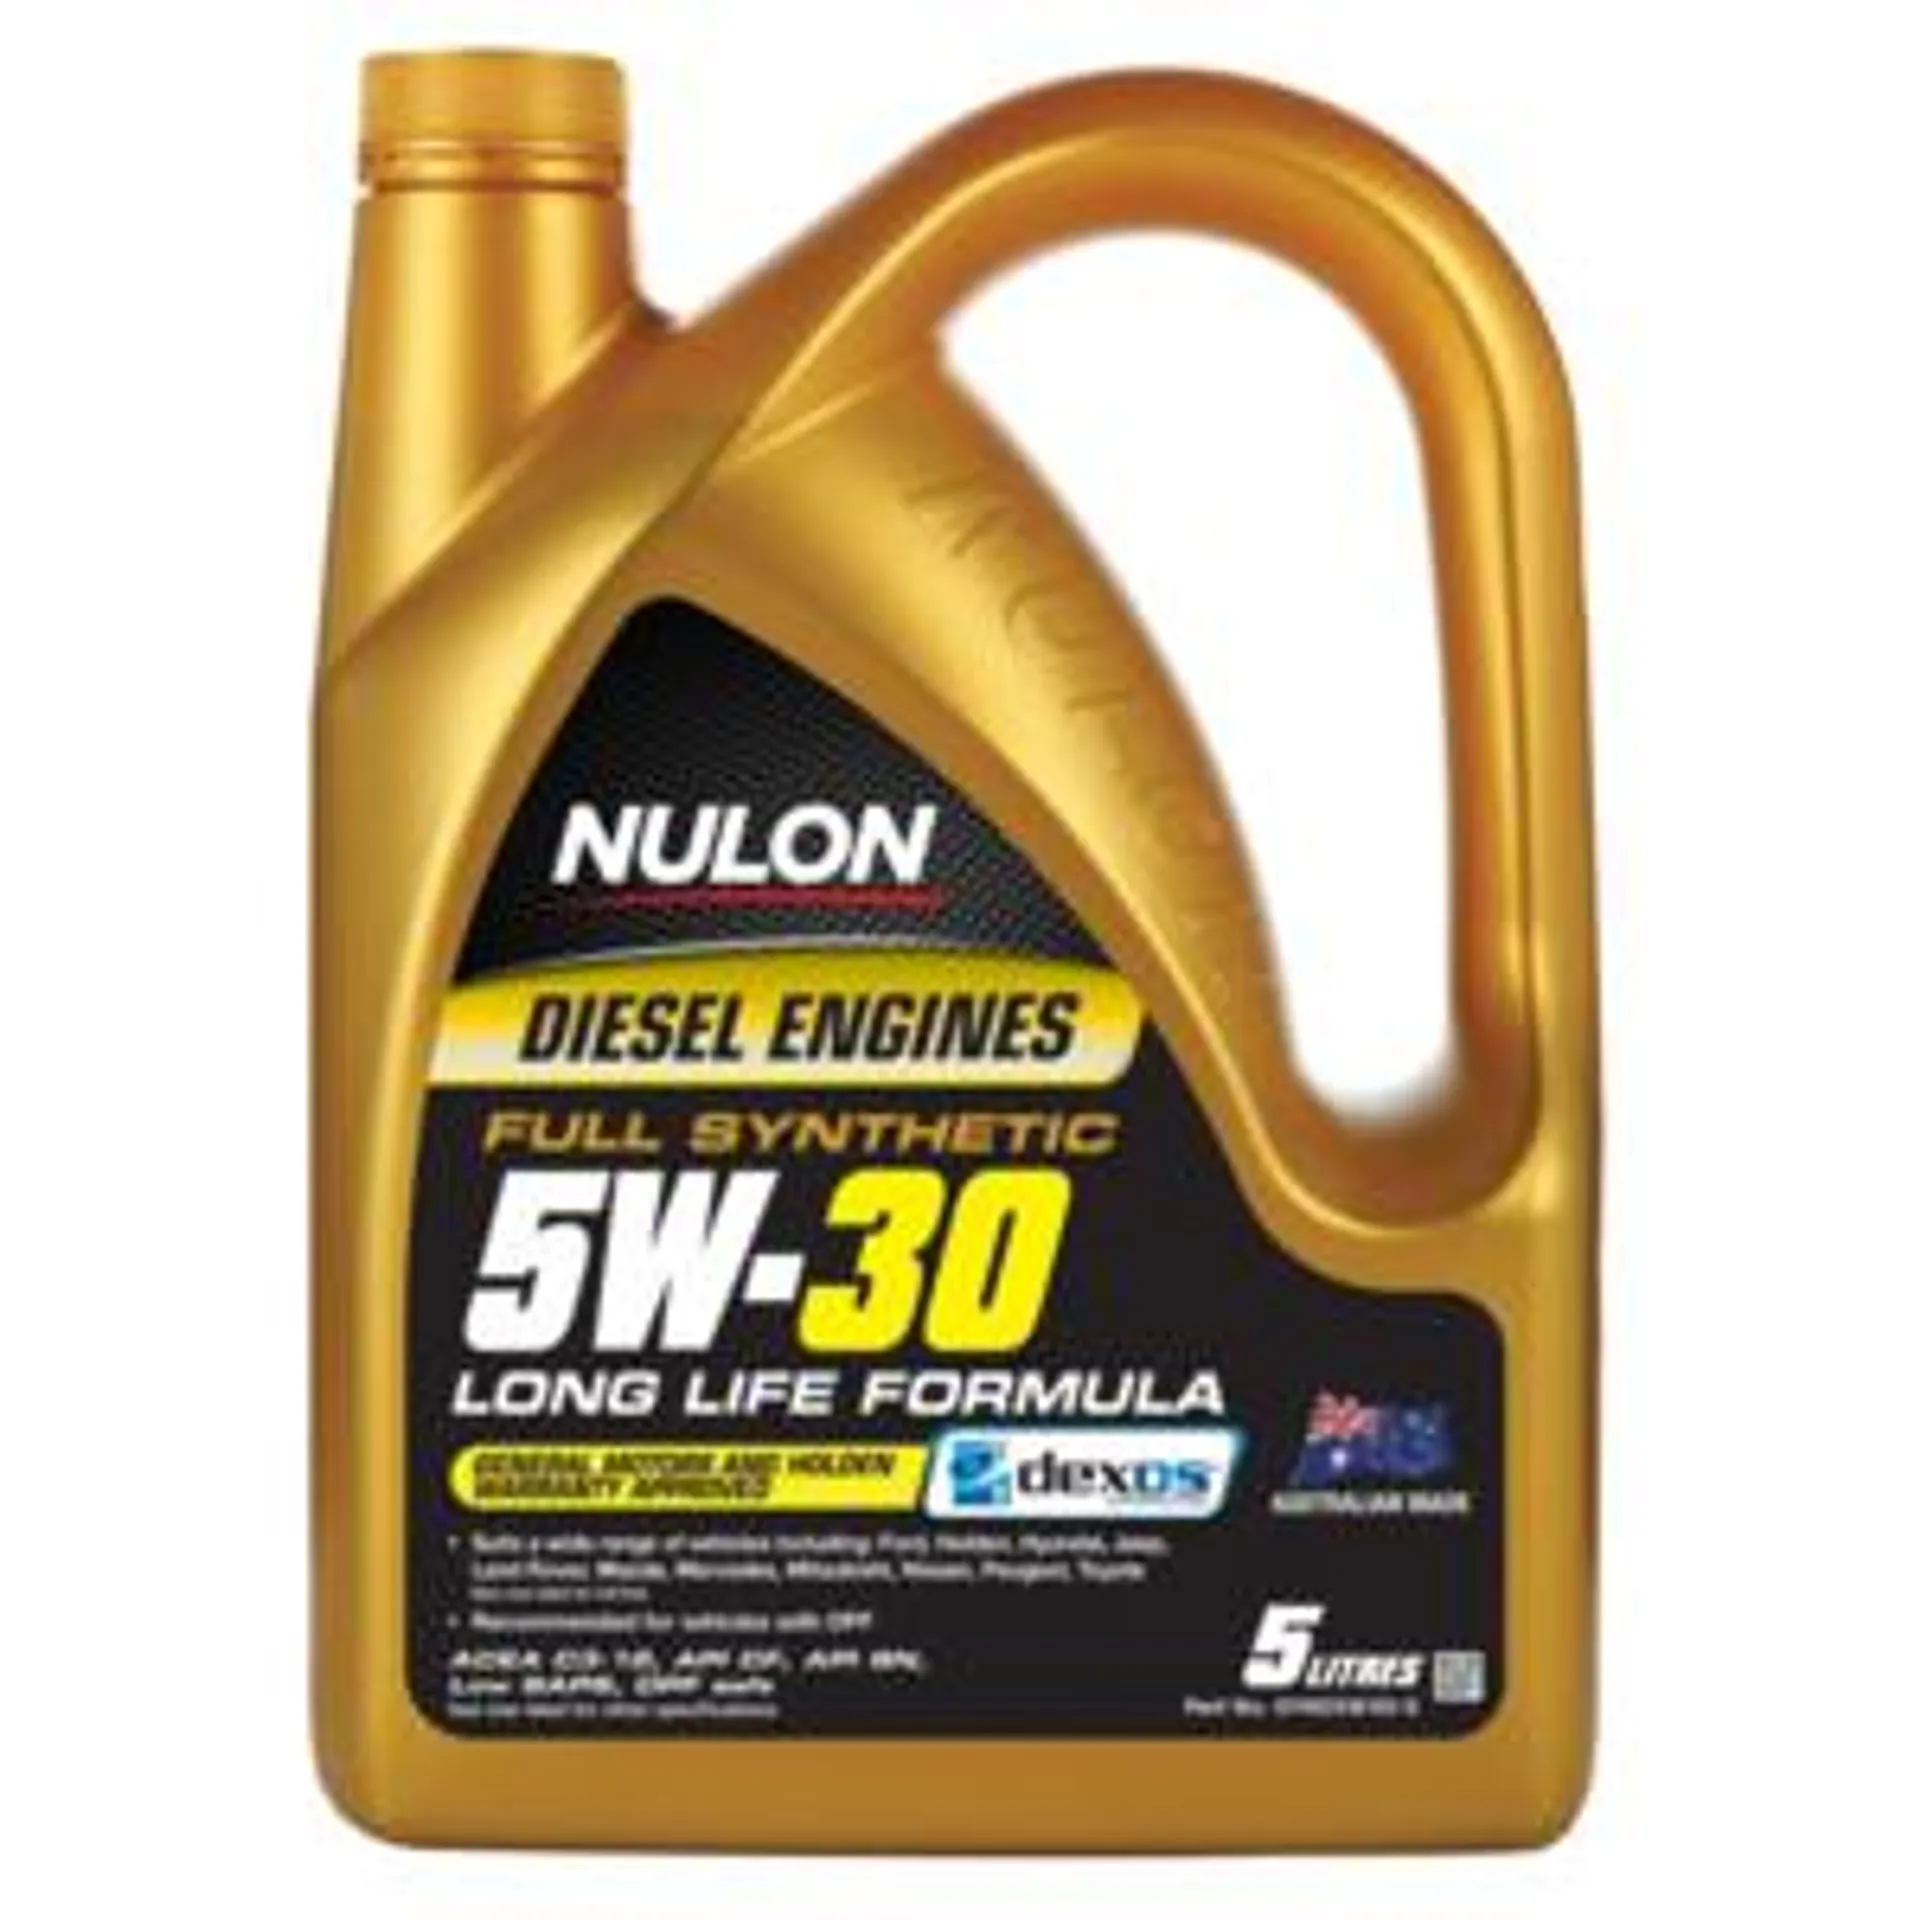 Nulon Full Synthetic 5W-30 Dieseil Engine Oil 5L - SYN15W50-5